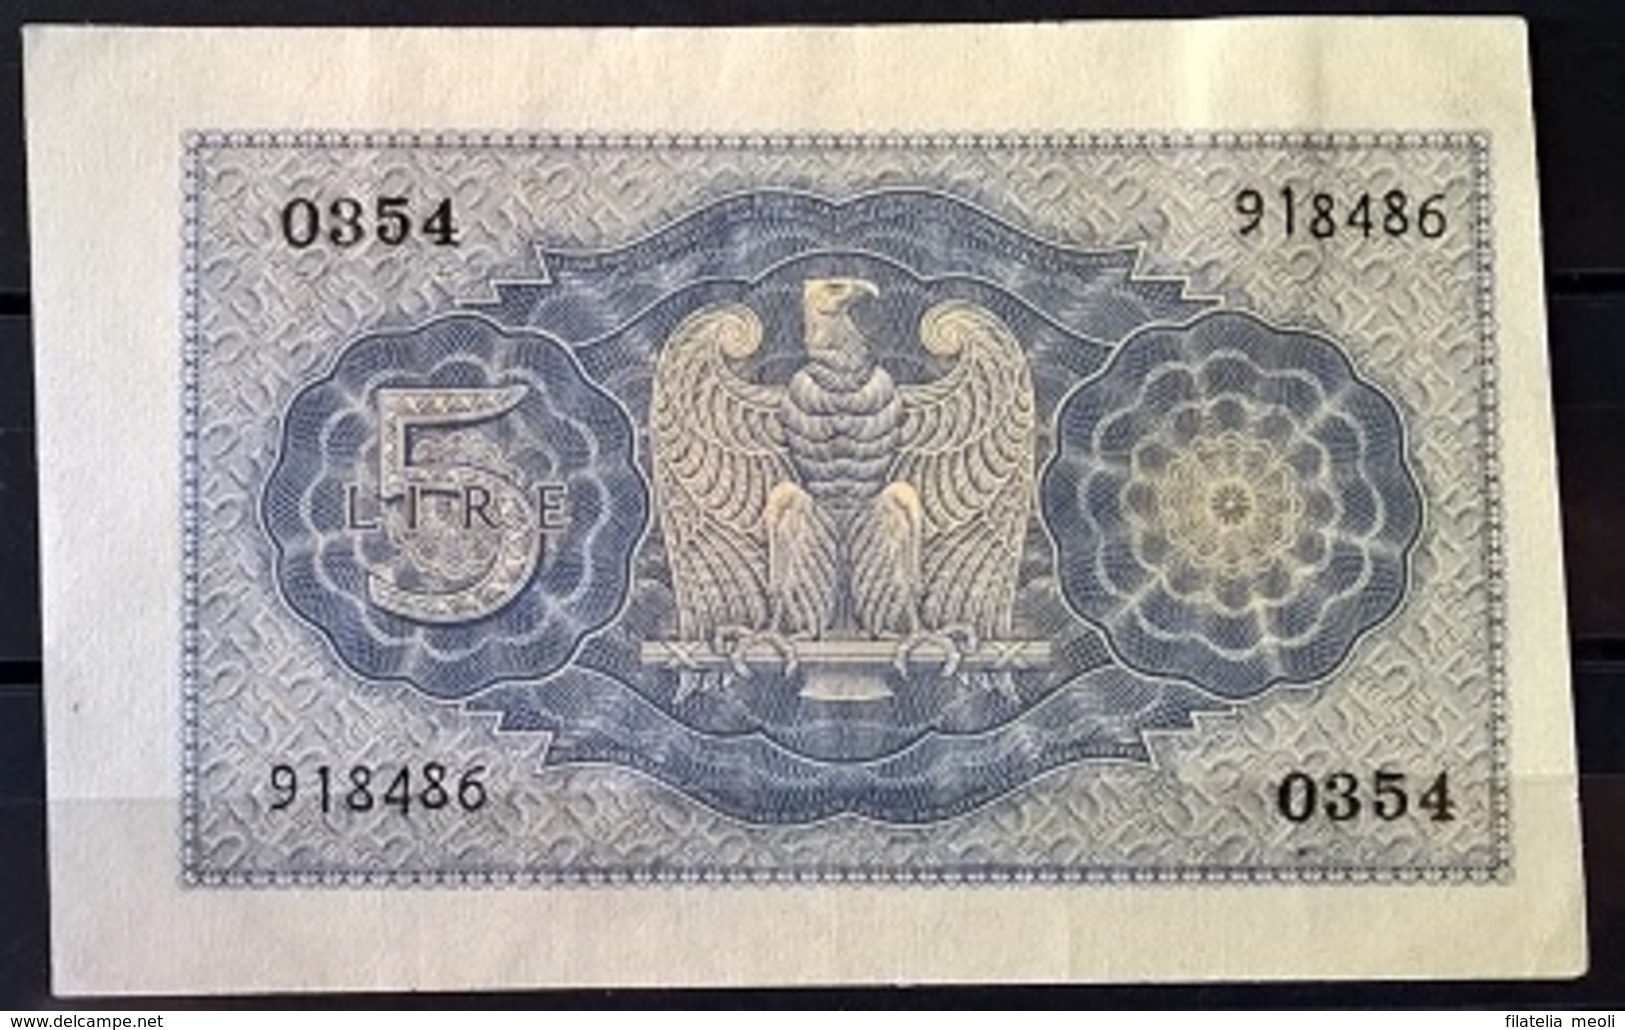 1939 - 5 LIRE FIOR DI STAMPA - Italië– 5 Lire